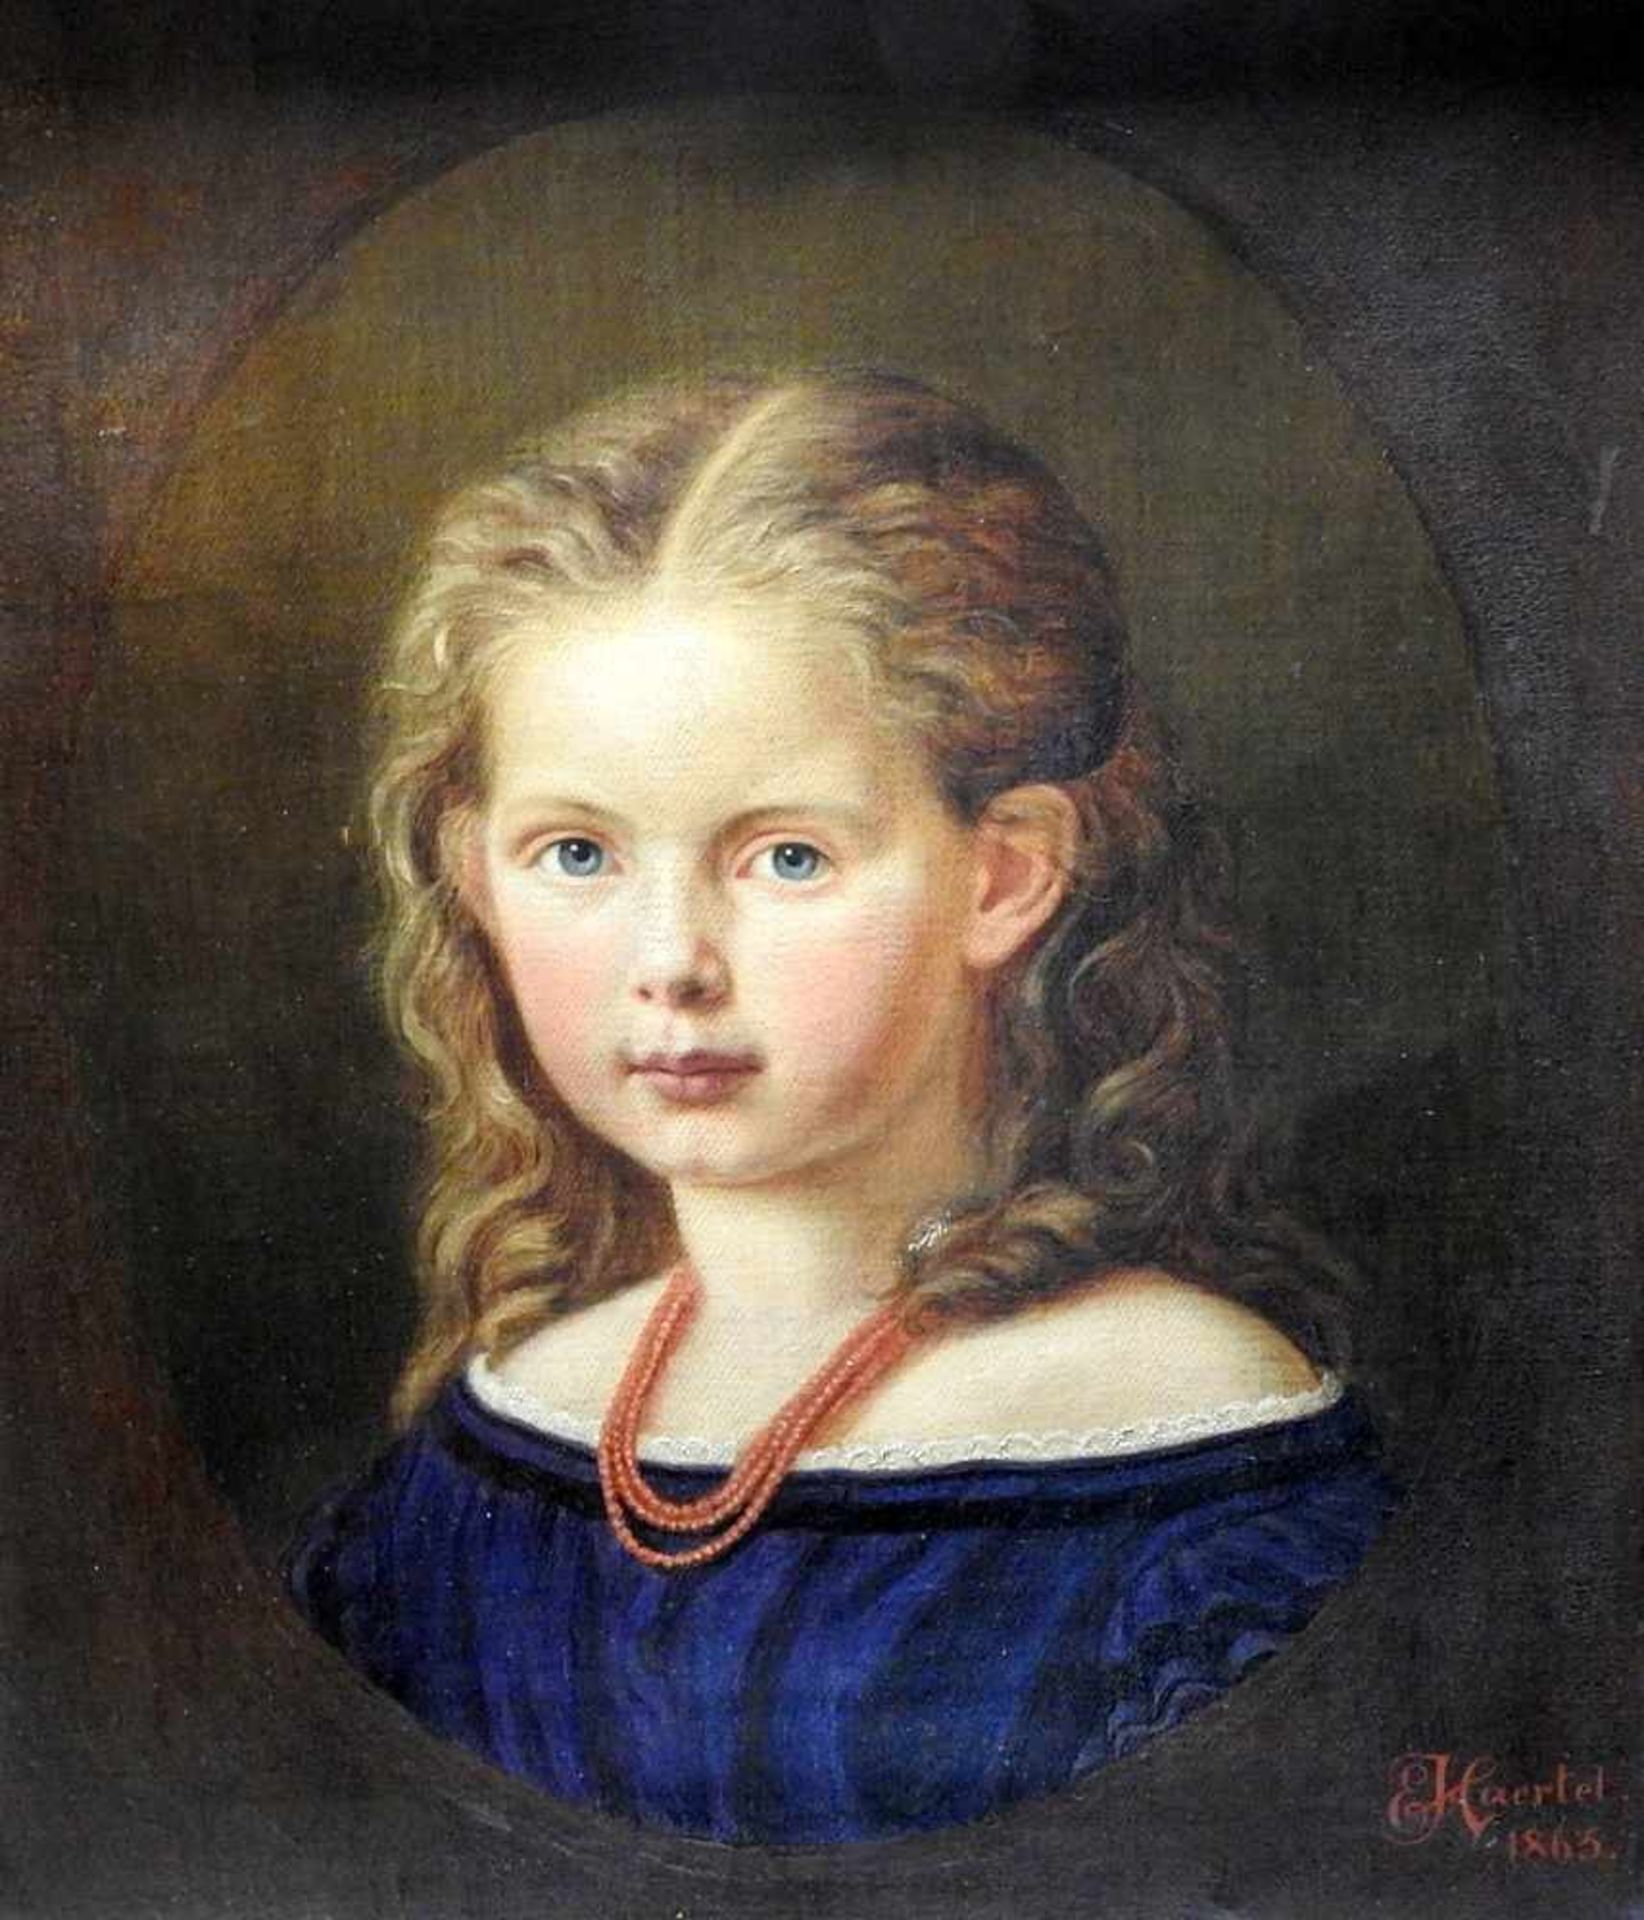 Porträt eines MädchensÖl/Leinwand. Dreiviertel-Porträt eines Mädchens mit blondem, lockigem Haar,